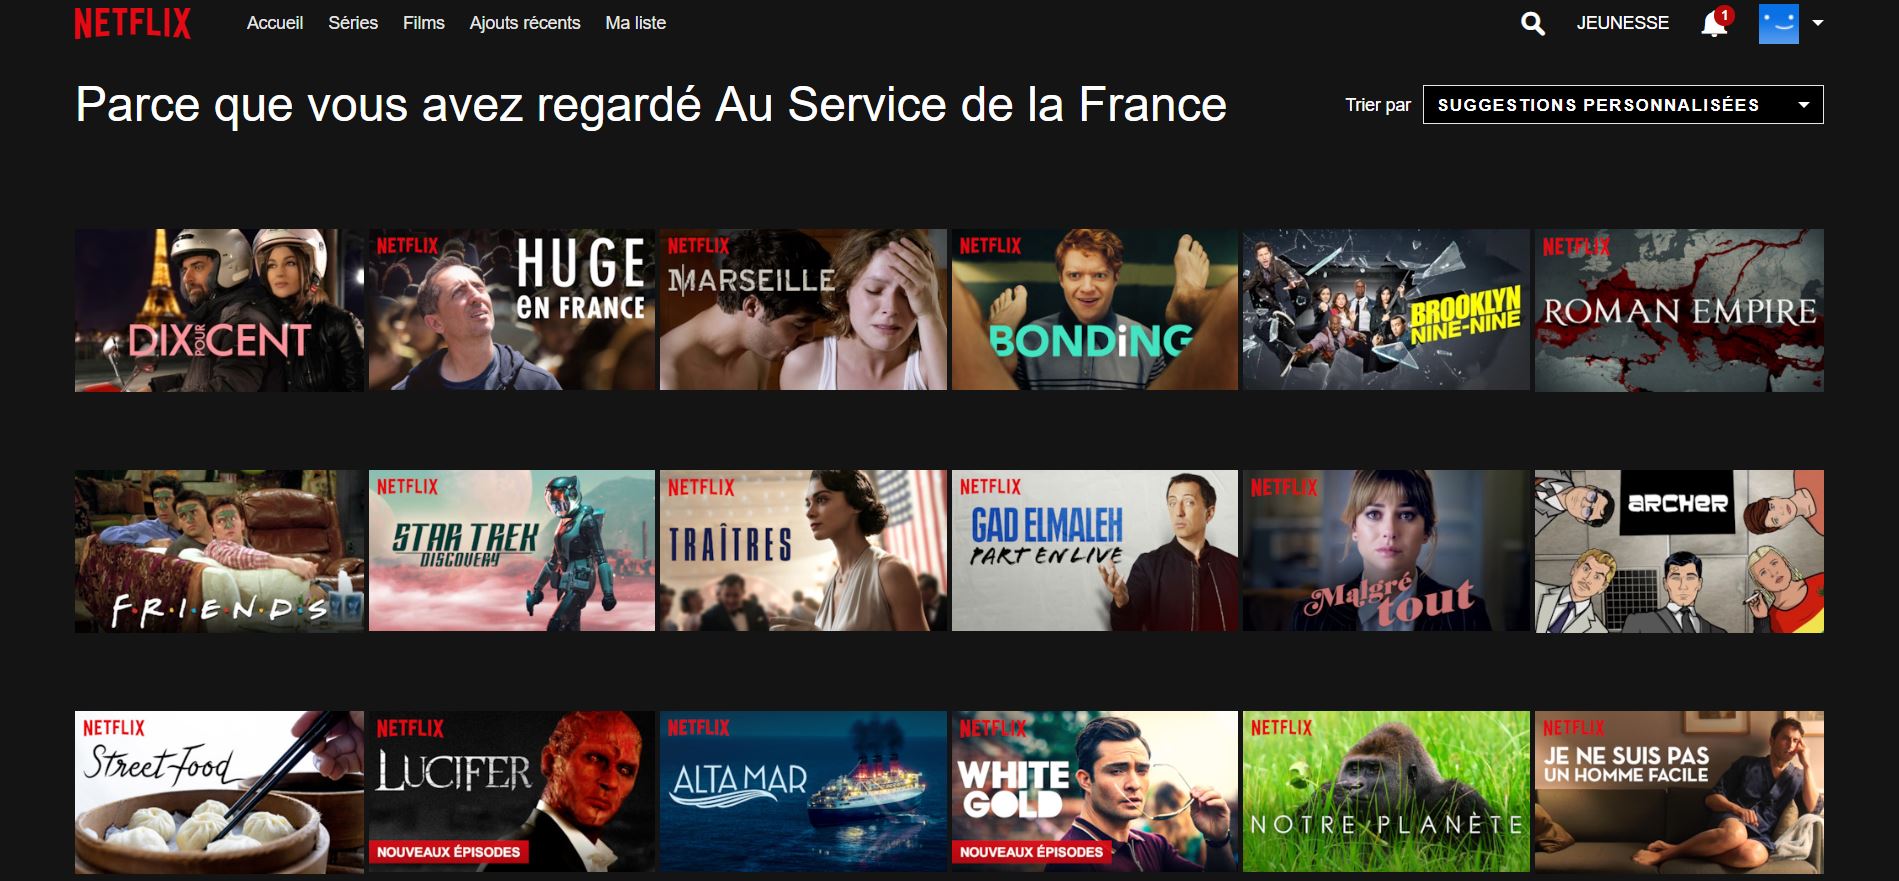 L'algorithme de recommandation de Netflix